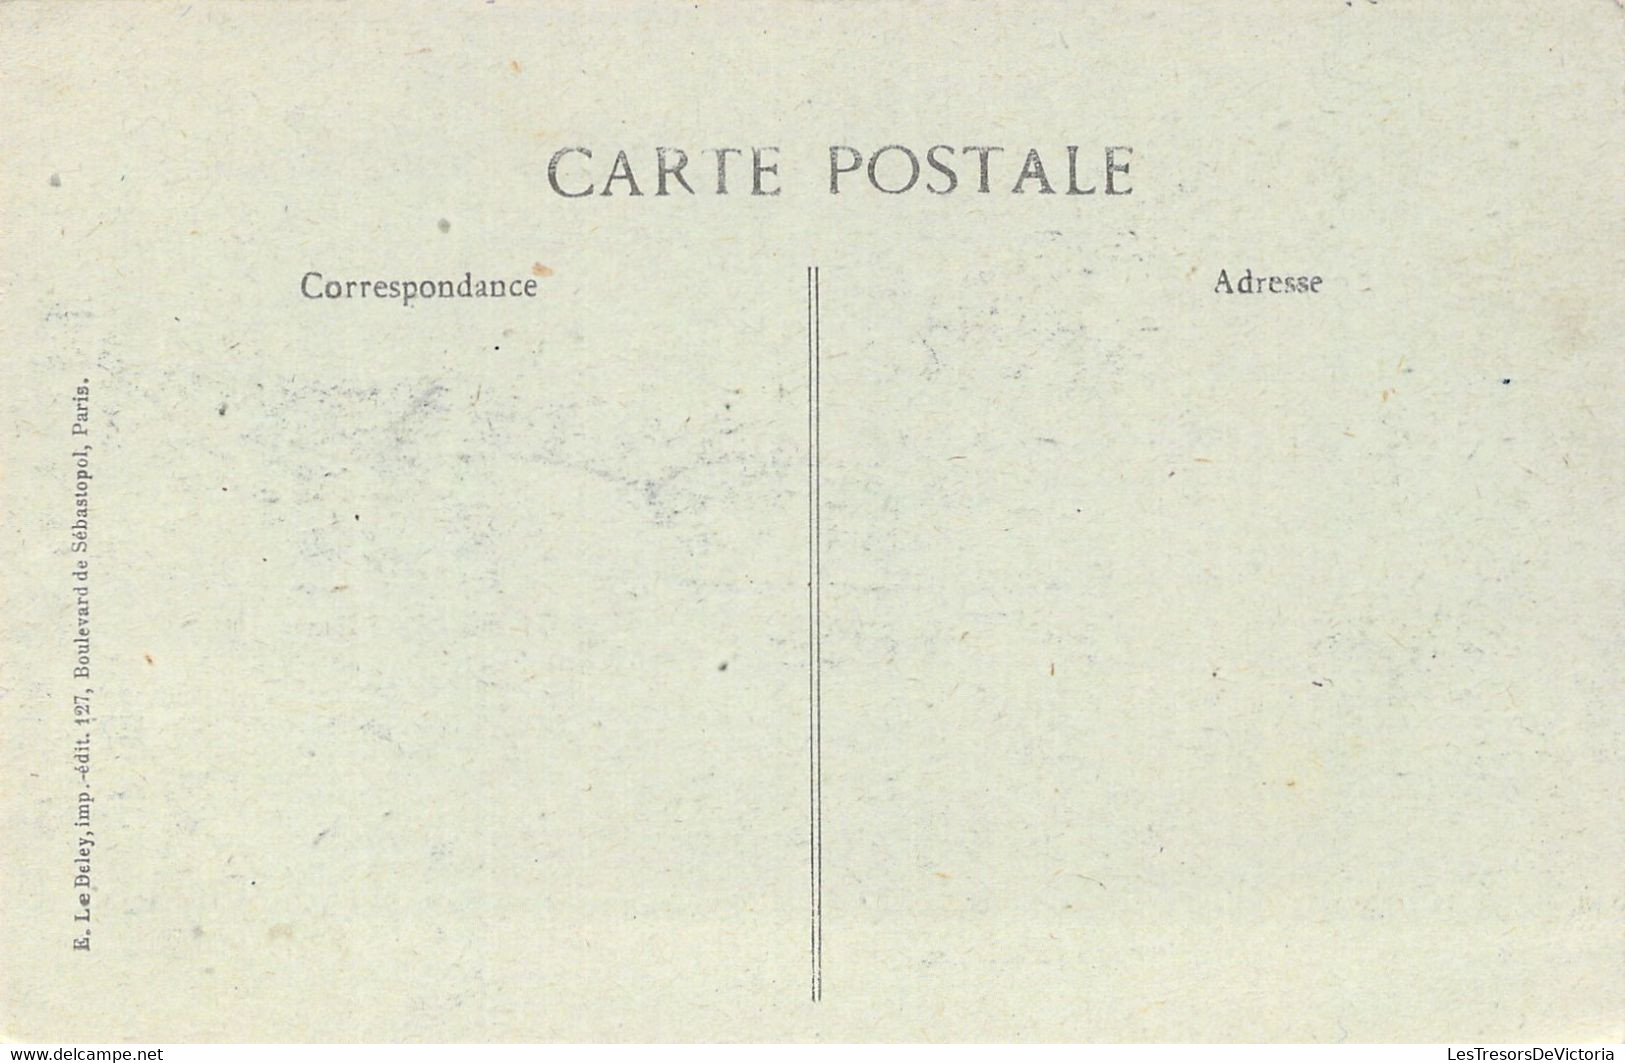 FRANCE - 93 - LA COURNEUVE - Catastrophe De La Courneuve - 15 Mars 1918 - Carte Postale Ancienne - La Courneuve